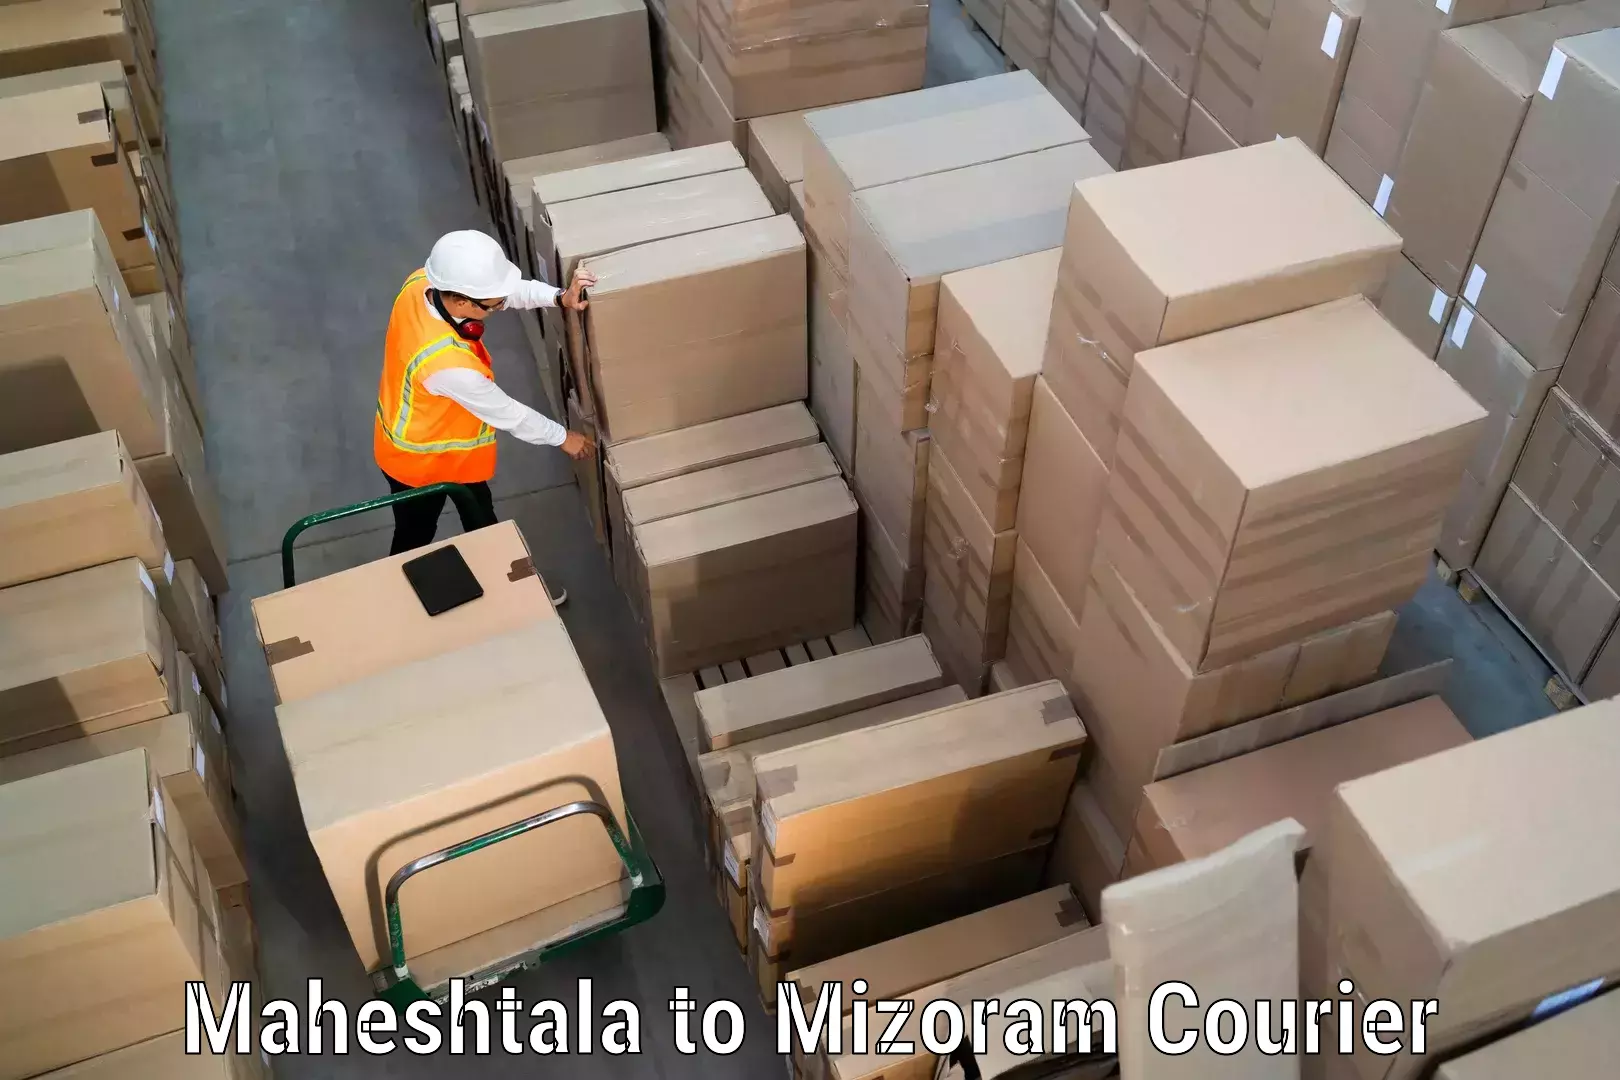 24/7 courier service Maheshtala to Khawzawl